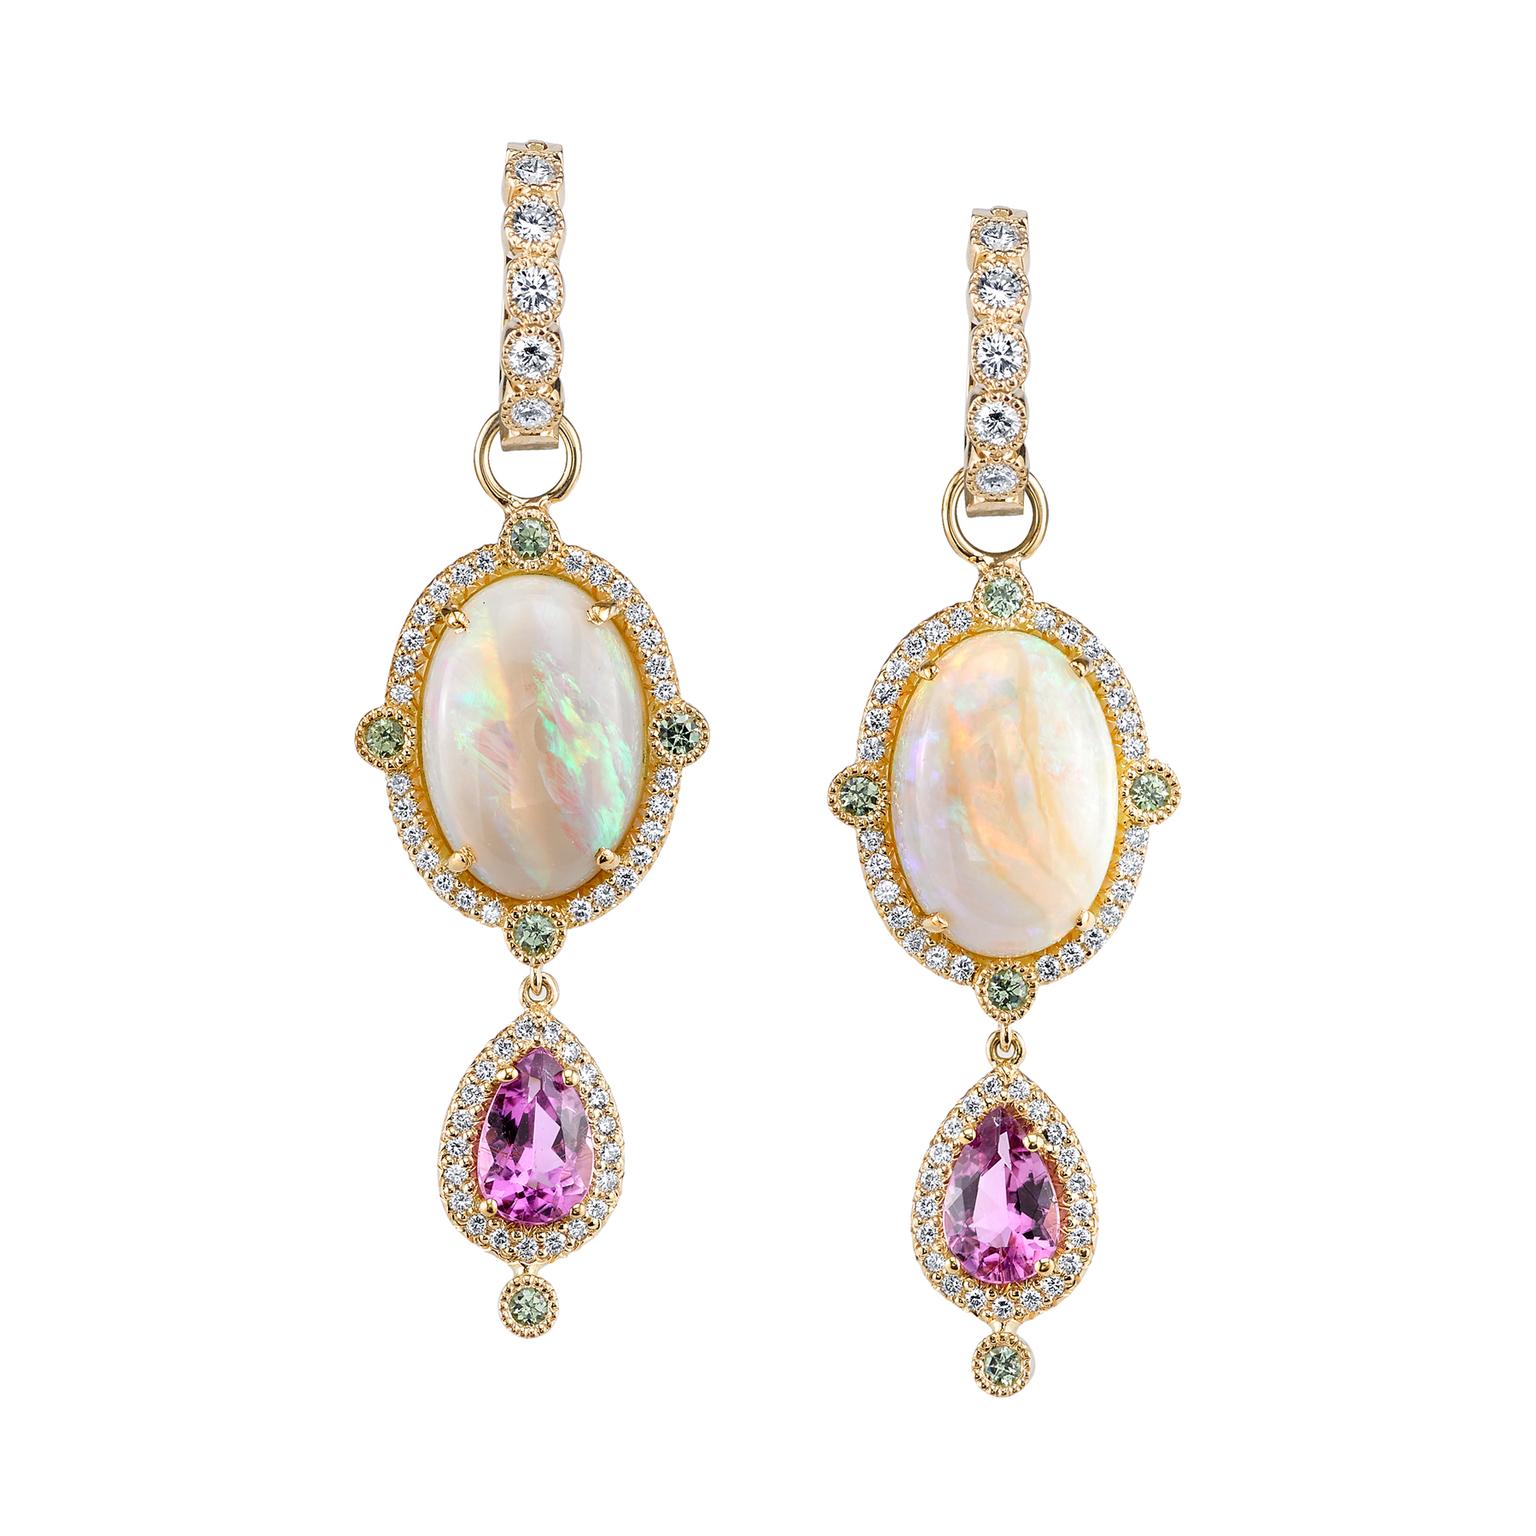 Erica Courtney Rosa Opal earrings